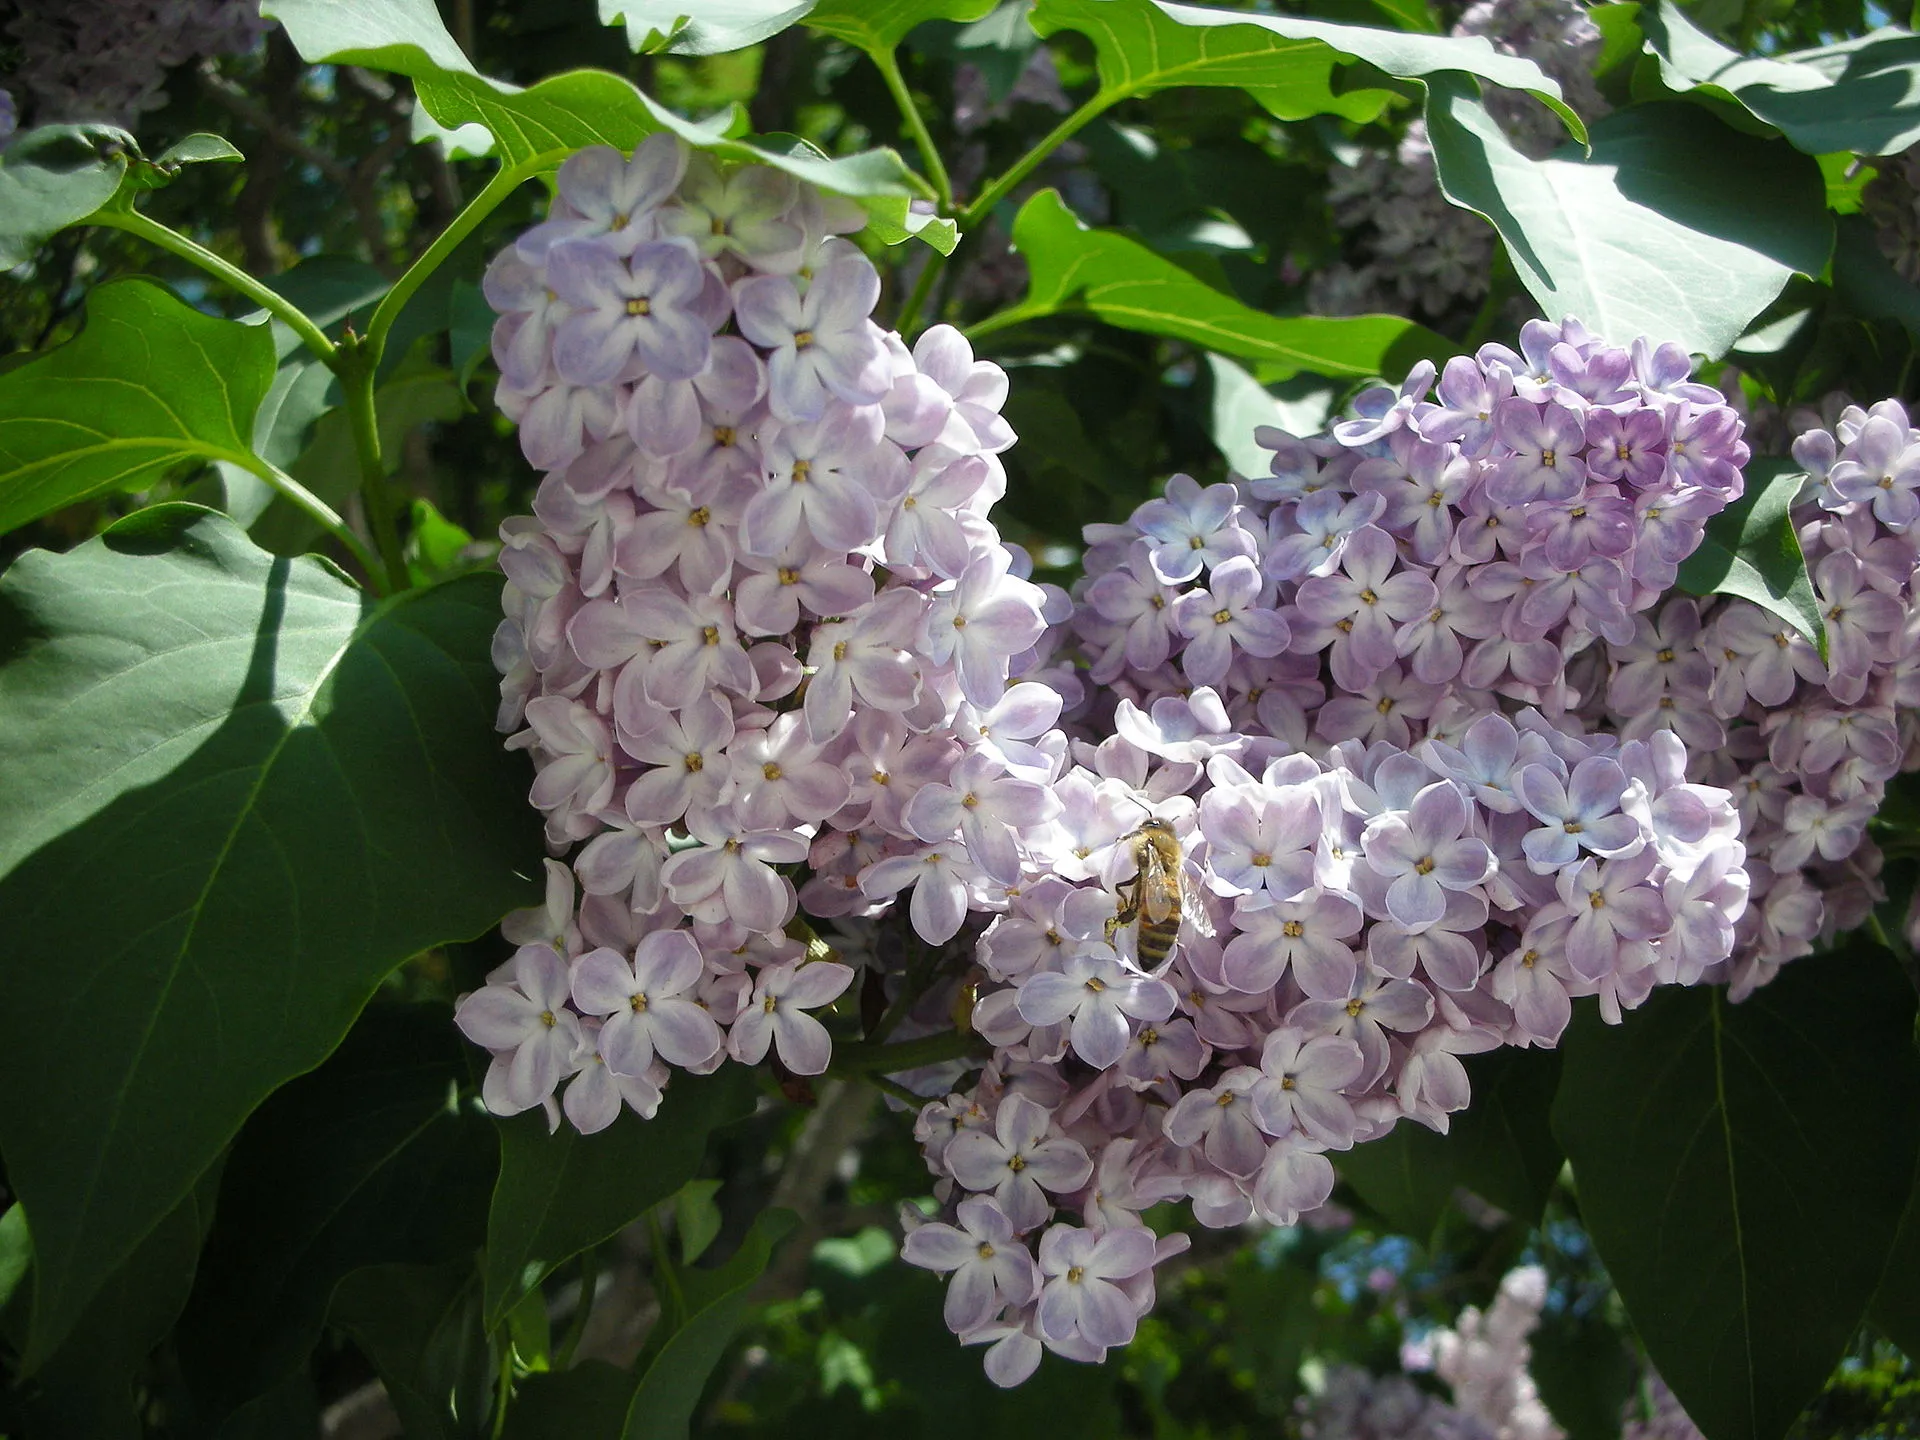 ライラック 紫 5月30日の誕生花 通販 愛香園 家庭菜園 造園 観葉植物の通販 造園 樹木 植物のスペシャリスト集団